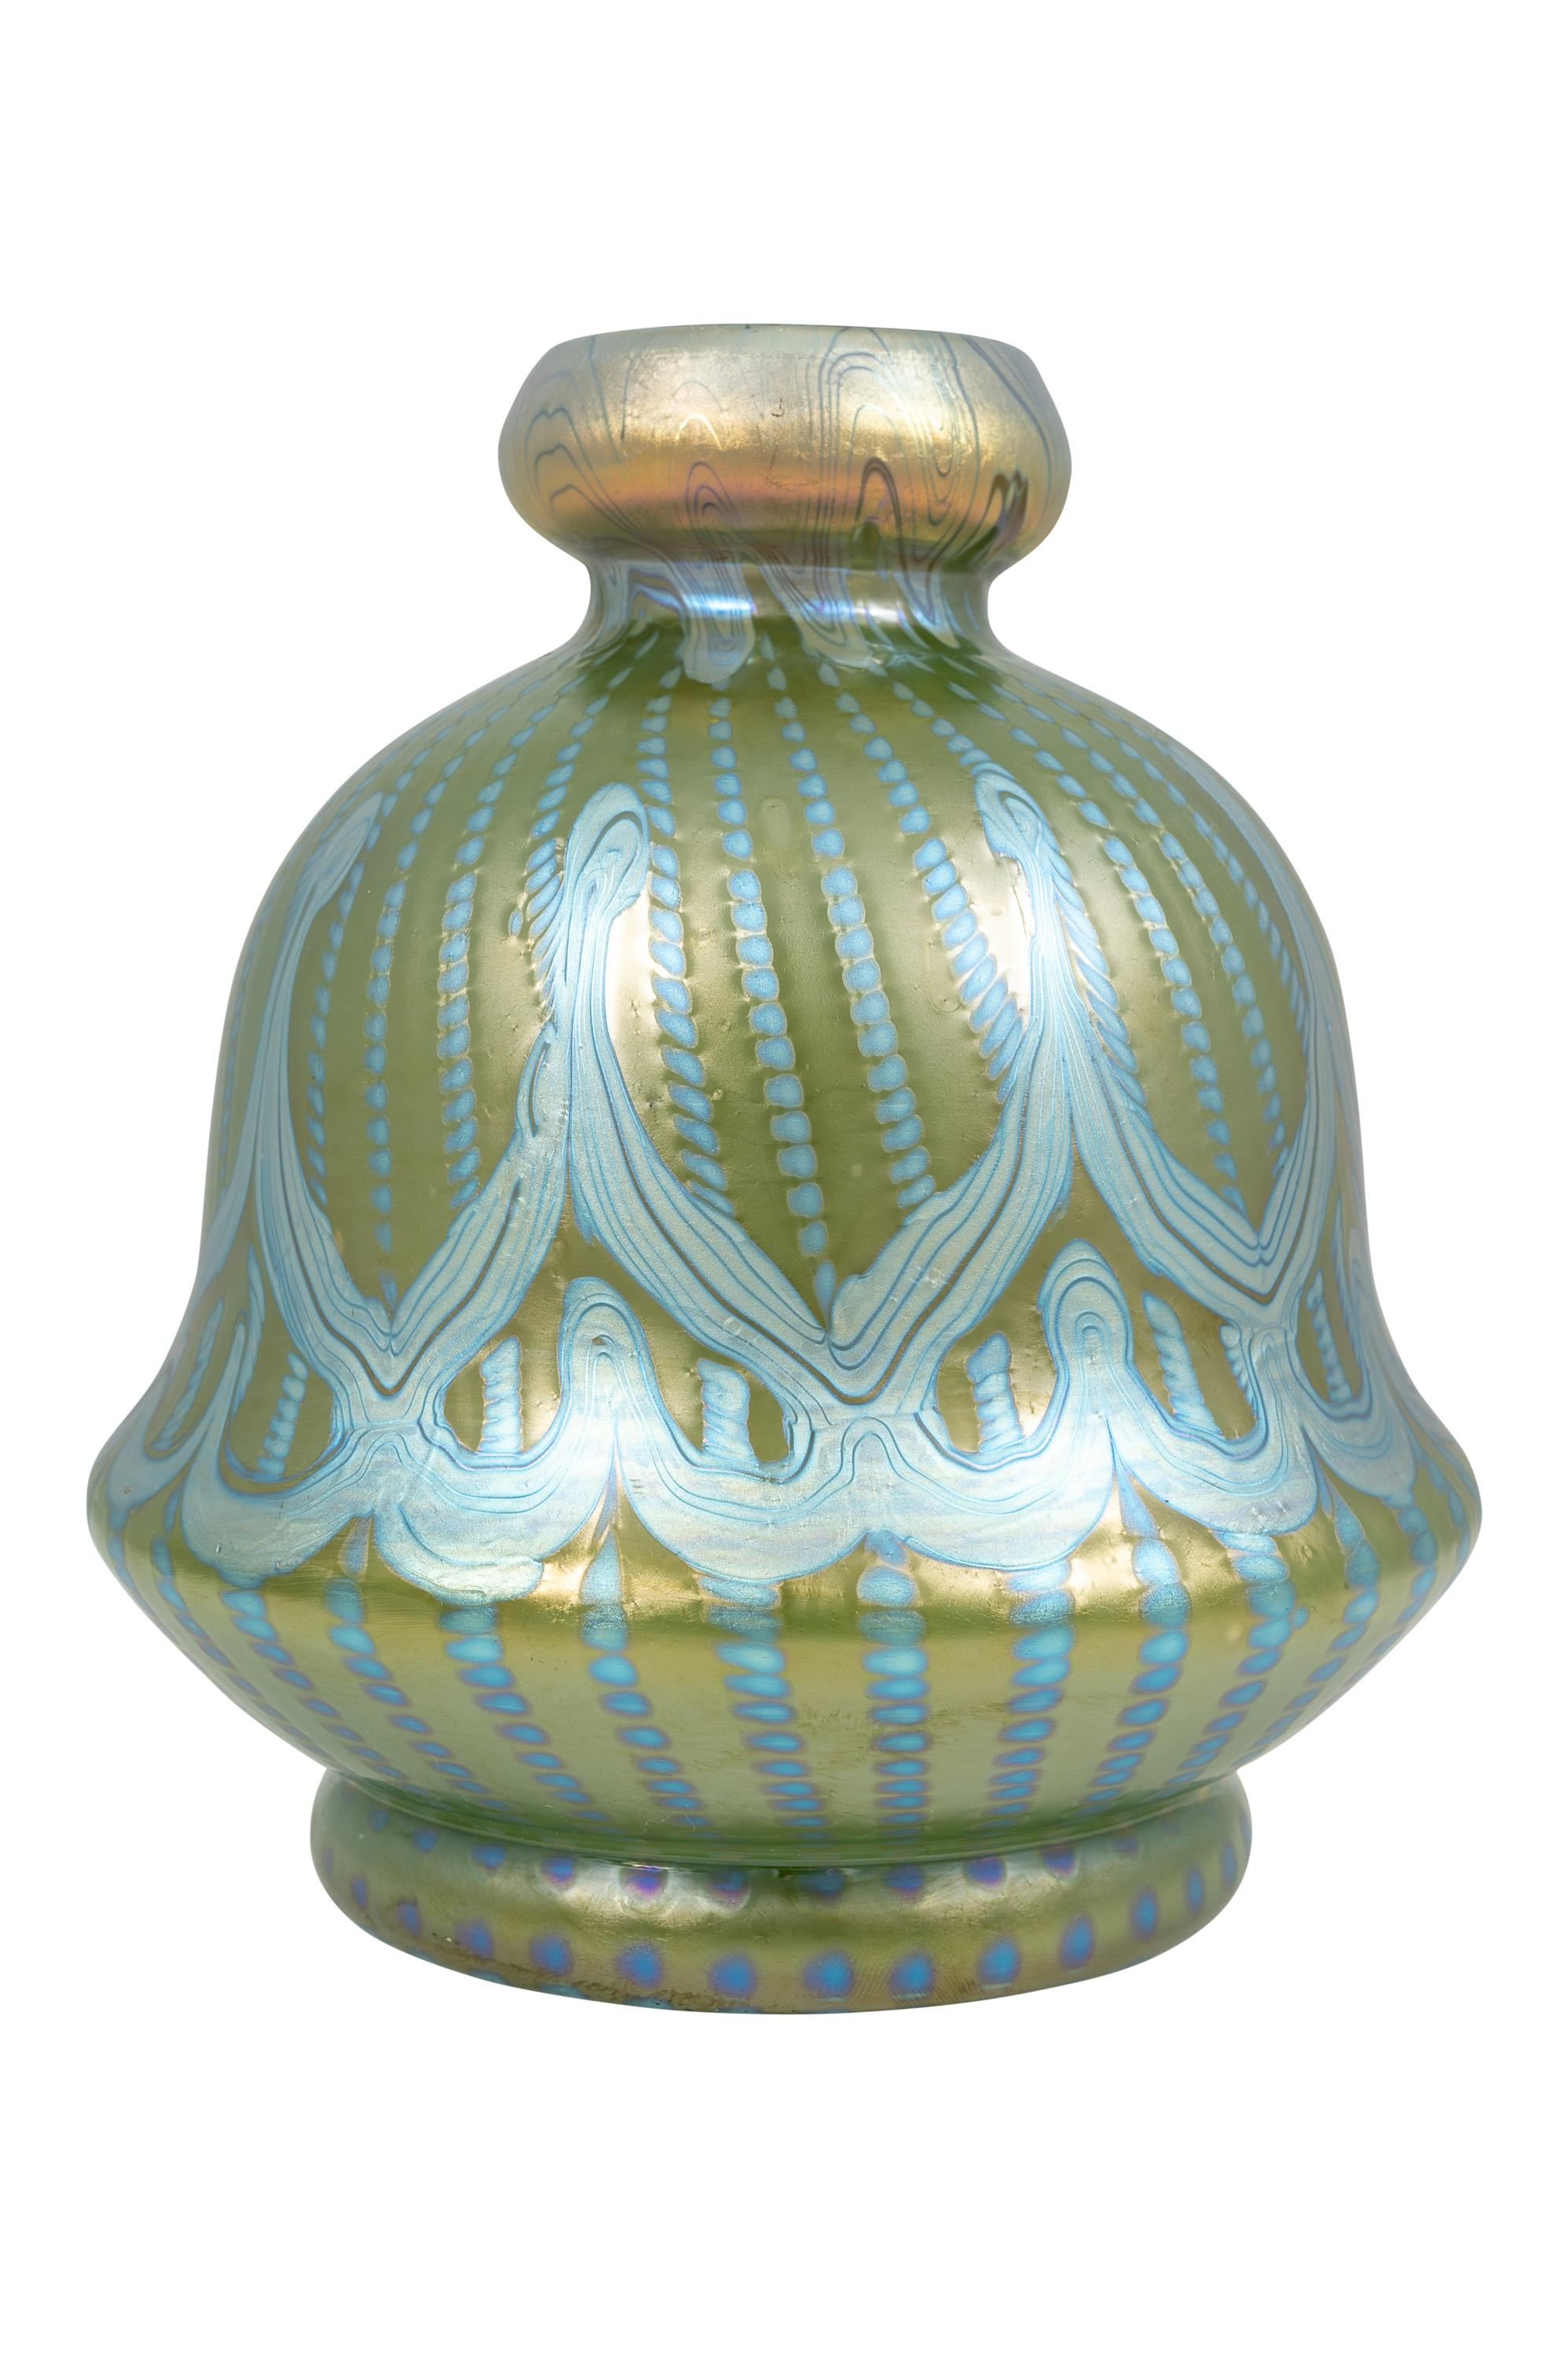 Vase aus böhmischem Glas, hergestellt von Johann Loetz Witwe, nicht identifiziertes Dekor, um 1900, Blau, Silber, Grün, Wiener Jugendstil, Jugendstil, Art Deco, Kunstglas, irisierendes Glas.

Technik und MATERIAL: Glas, formgeblasen und frei